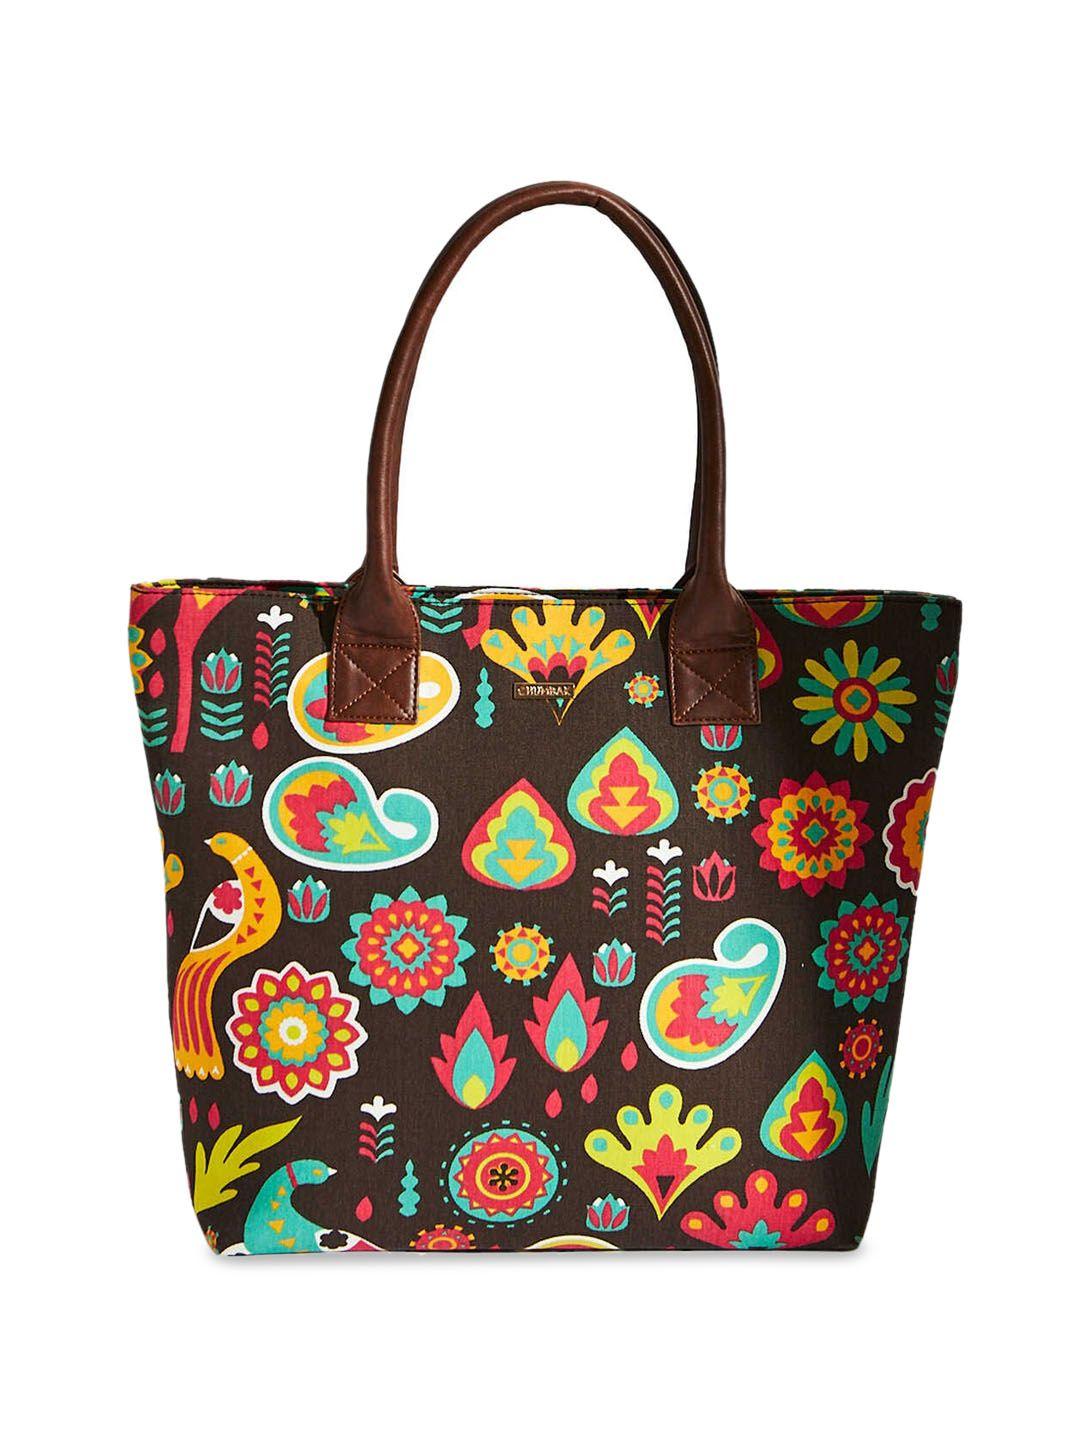 chumbak brown floral printed shopper tote bag